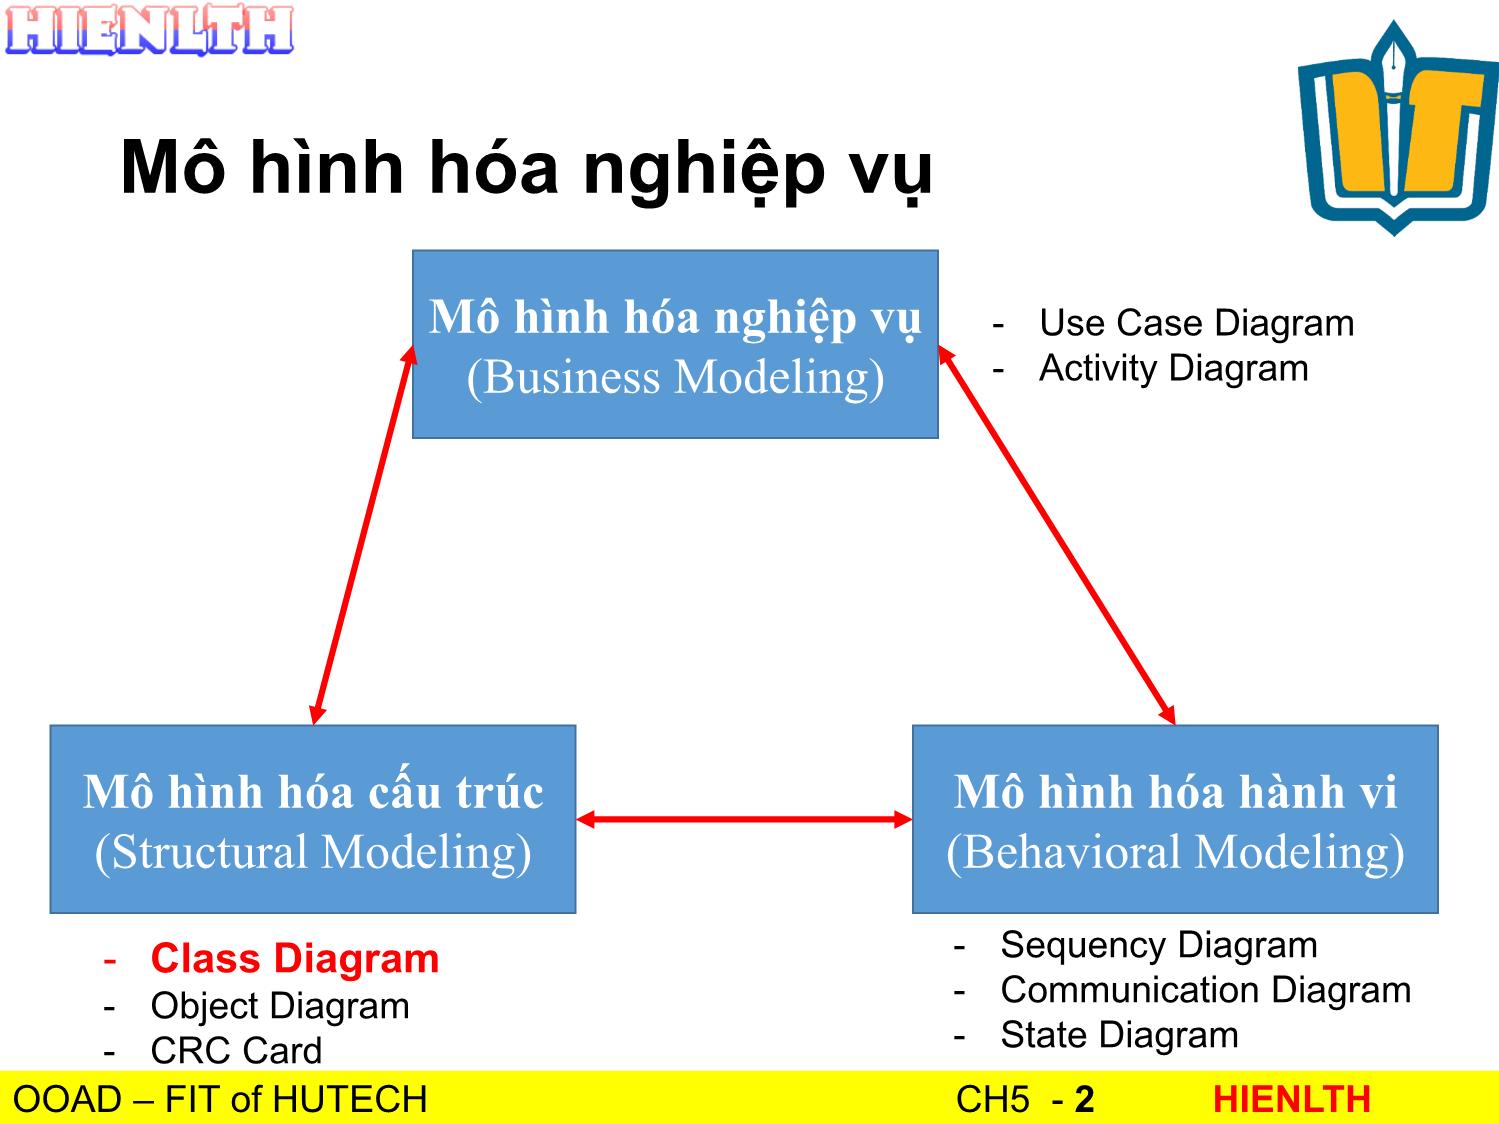 Bài giảng Phân tích thiết kế hướng đối tượng - Bài 5: Mô hình hóa cấu trúc - Lương Trần Hy Hiến trang 2